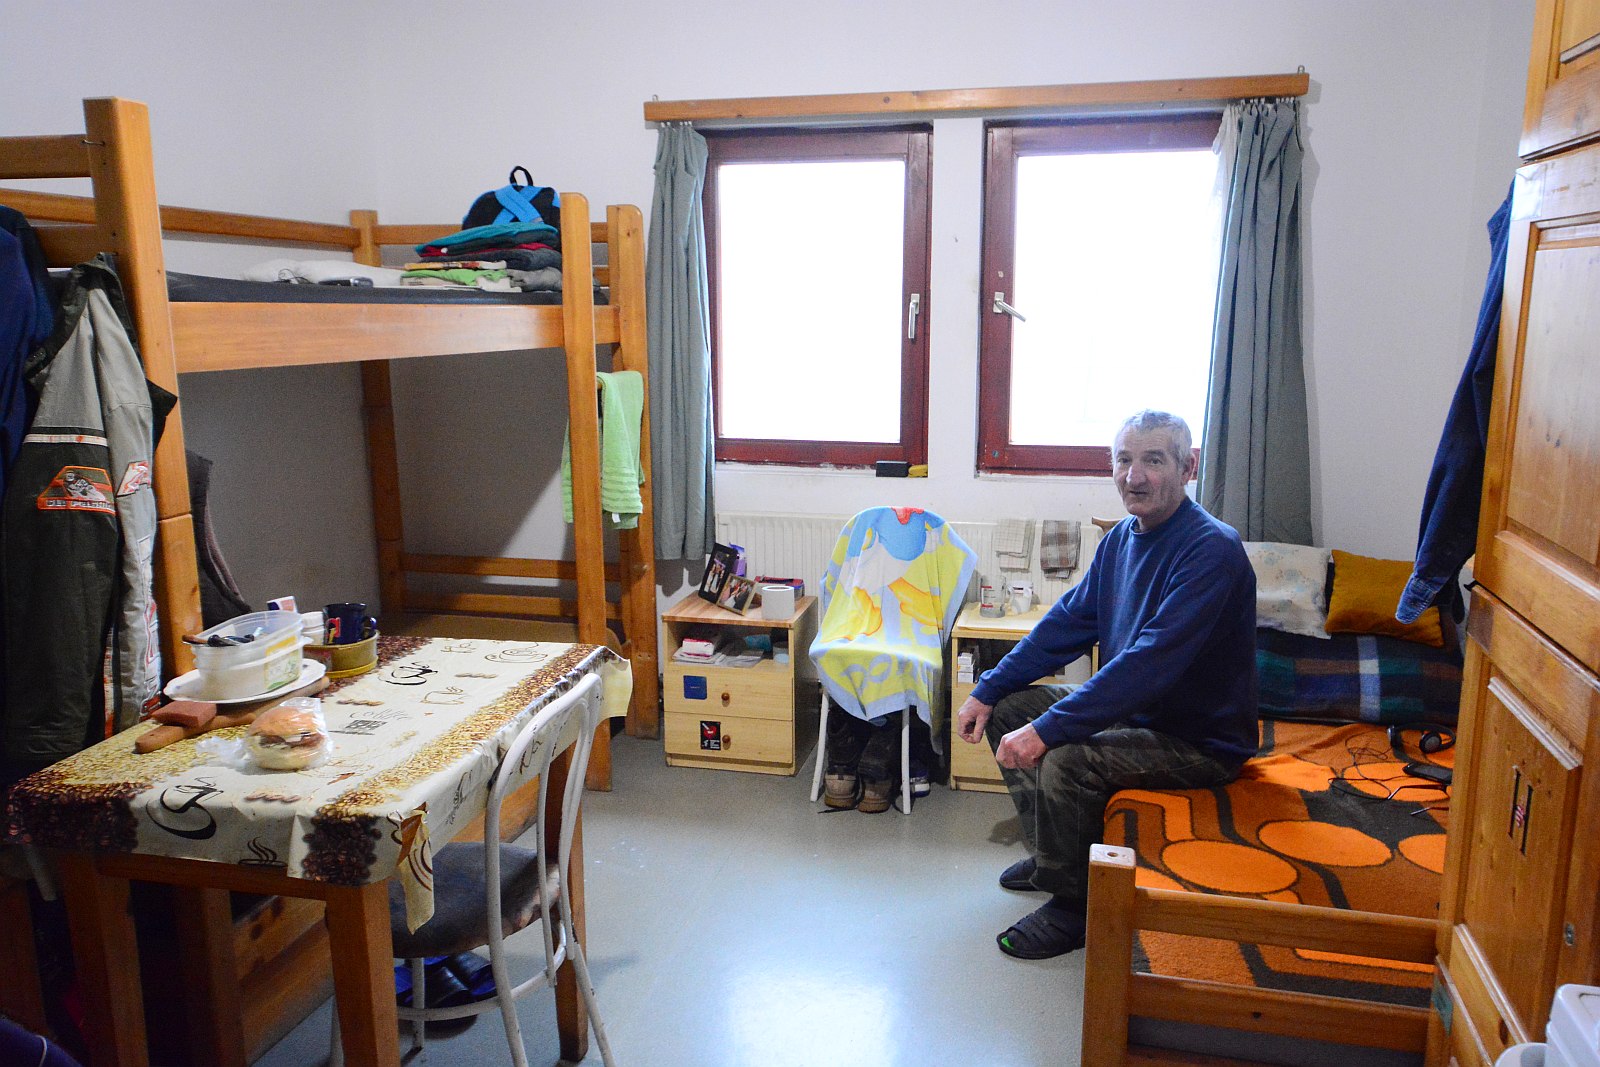 Hol ér véget a felelős gondoskodás? - a hajléktalanellátásról Székesfehérváron